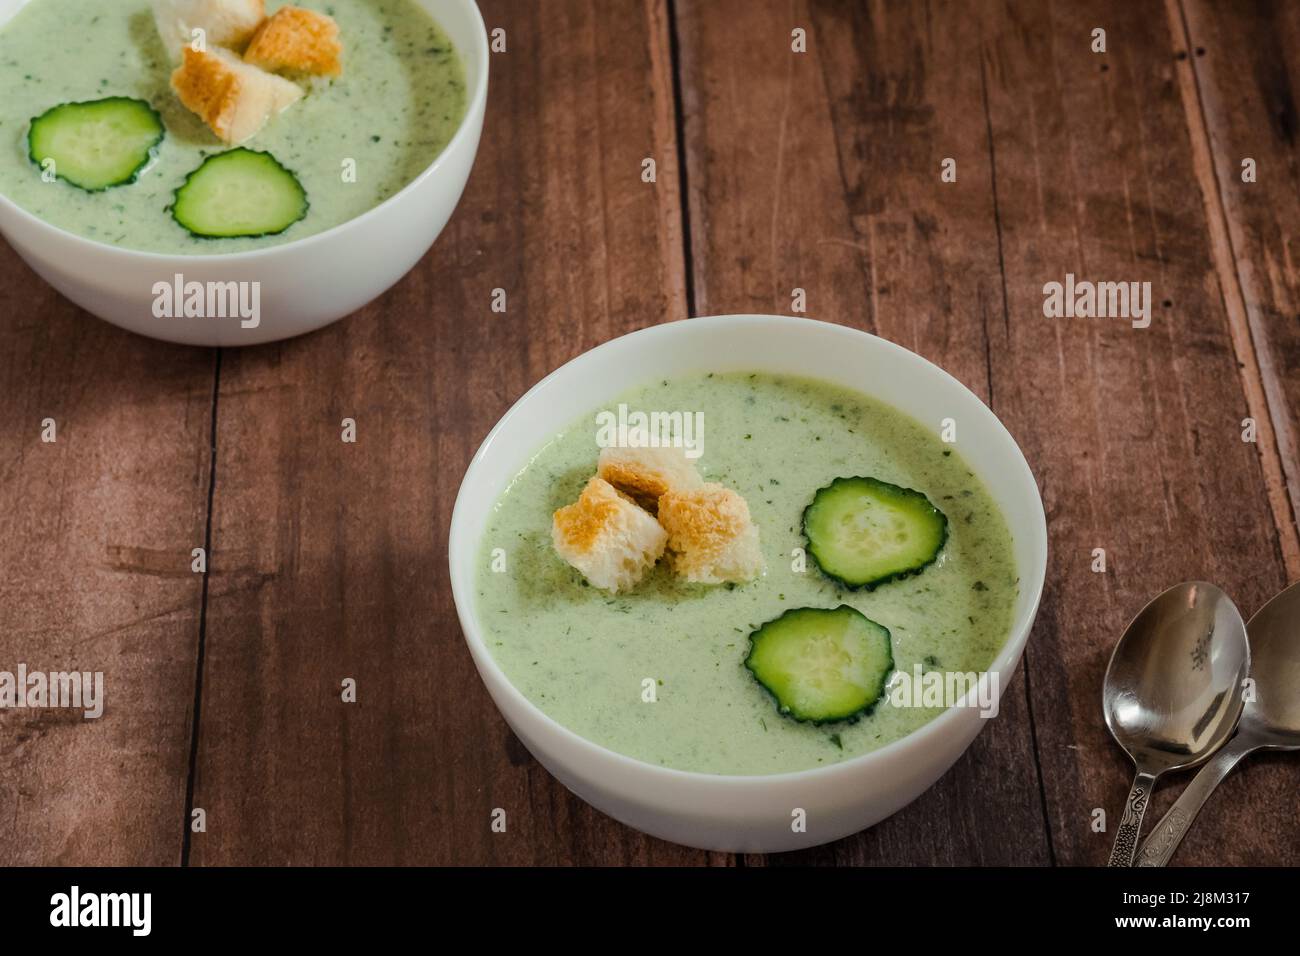 Soupe froide verte avec concombre sur une table en bois. Nourriture végétalienne saine Banque D'Images